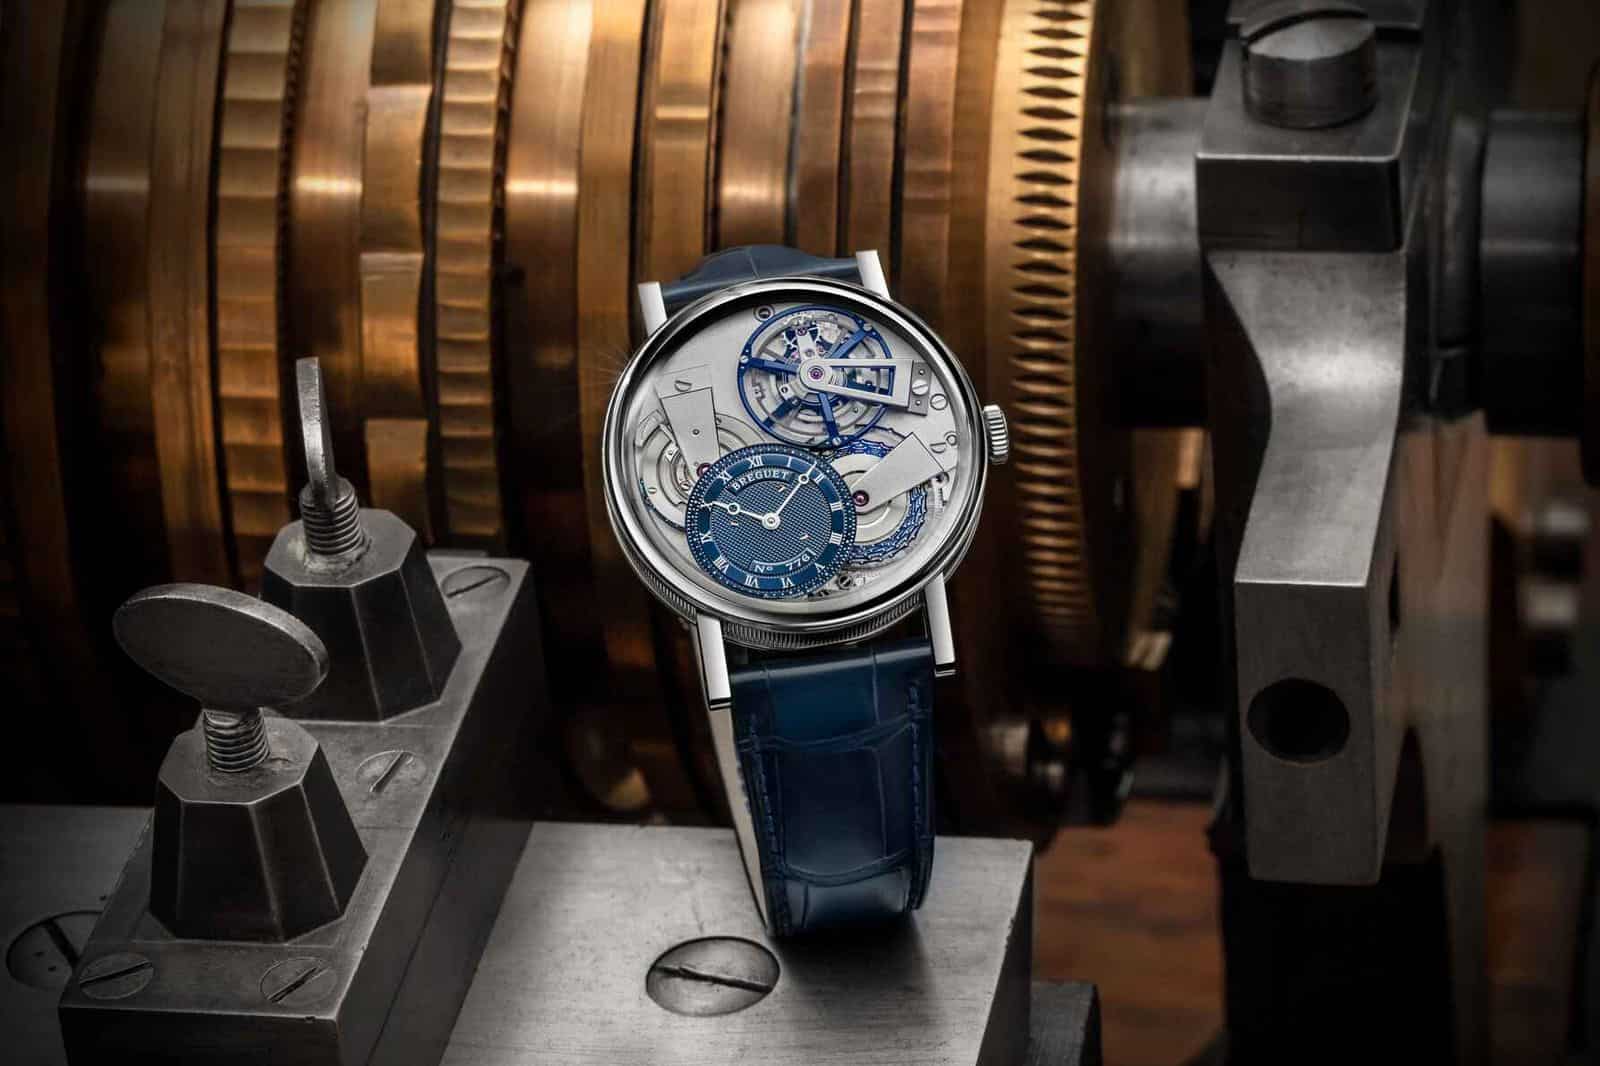 Breguet, הדגם האחרון שלה מקולקציית Tradition, לזכר יצירת שעון הטורבילון מאת אברהם-לואי.